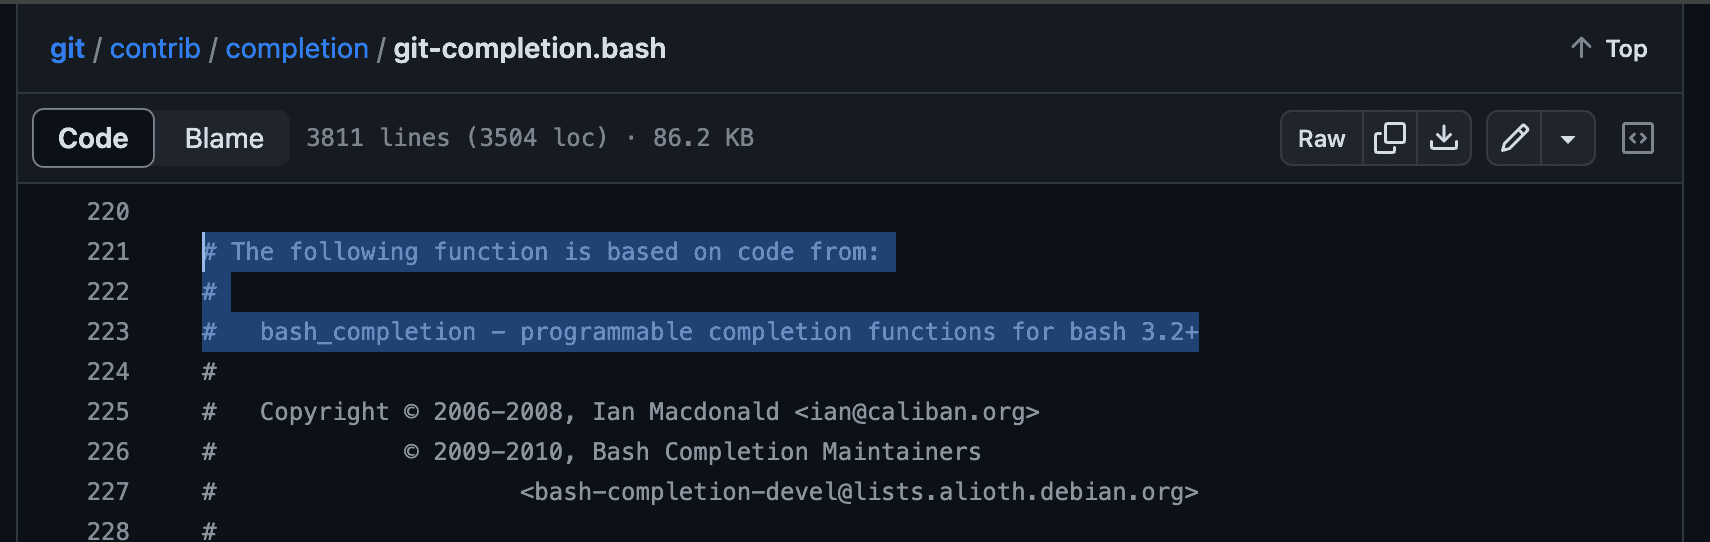 Git completion script mentioning bash completion